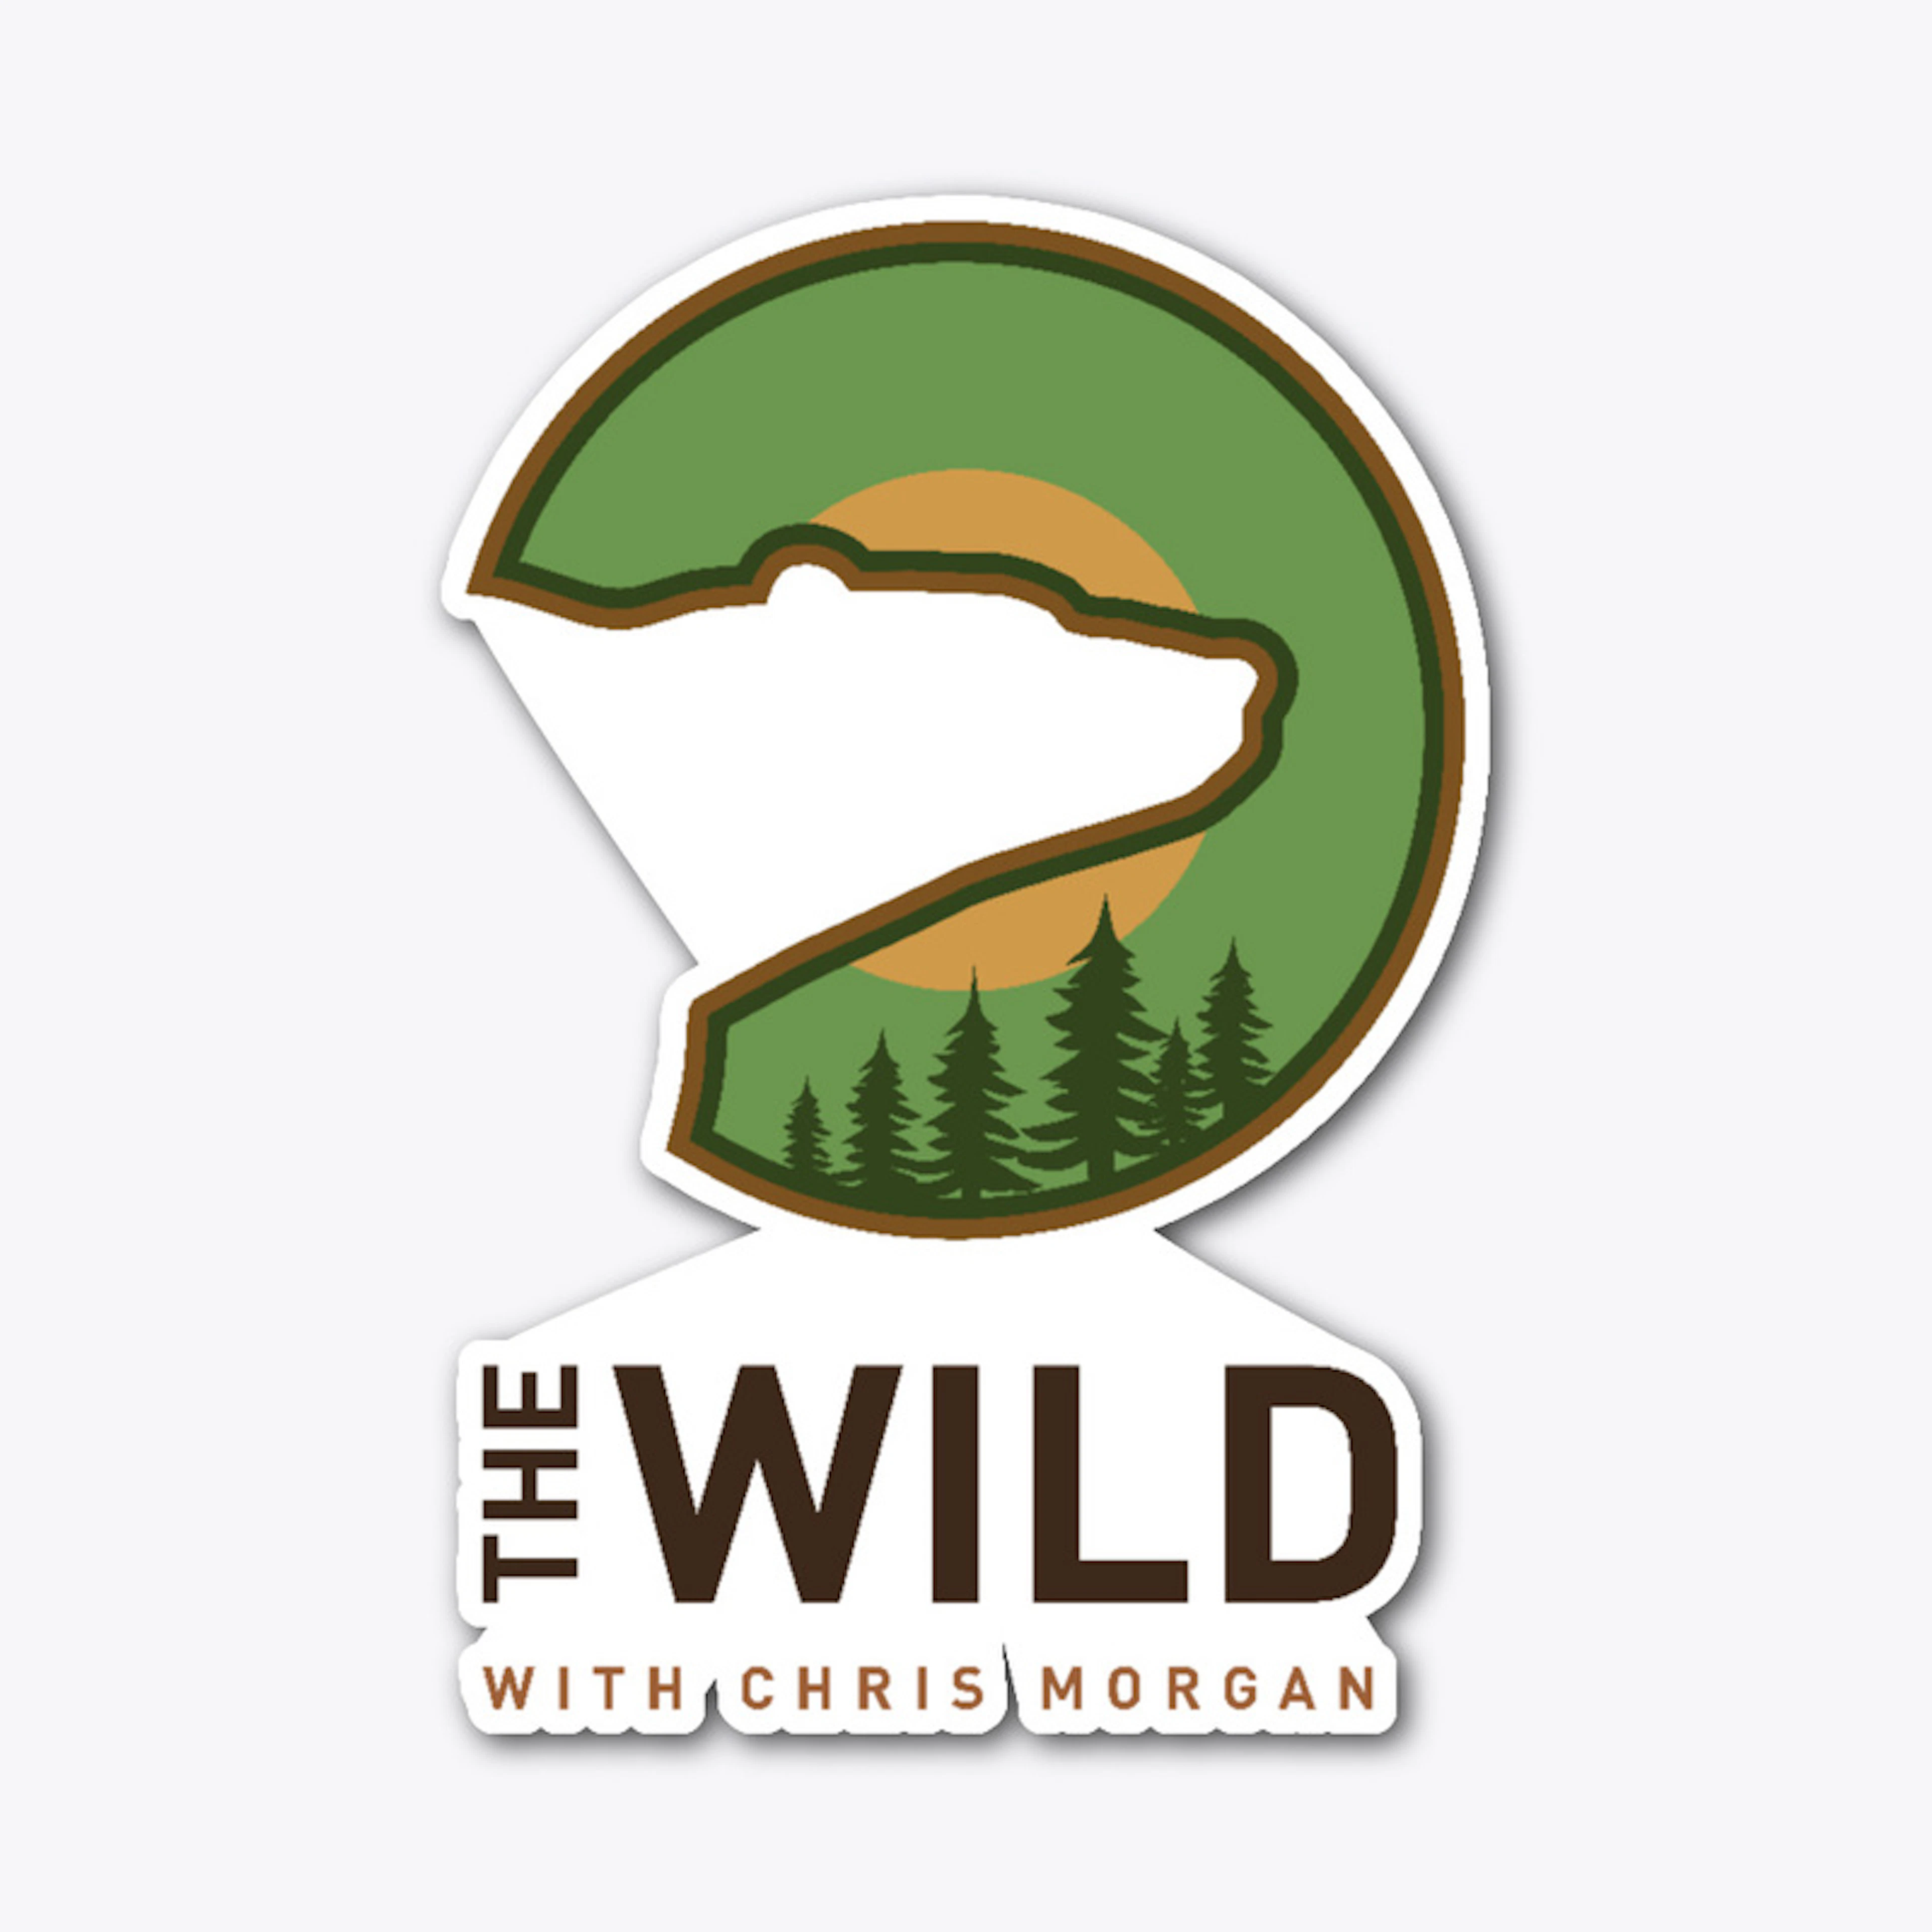 THE WILD 2021 logo2